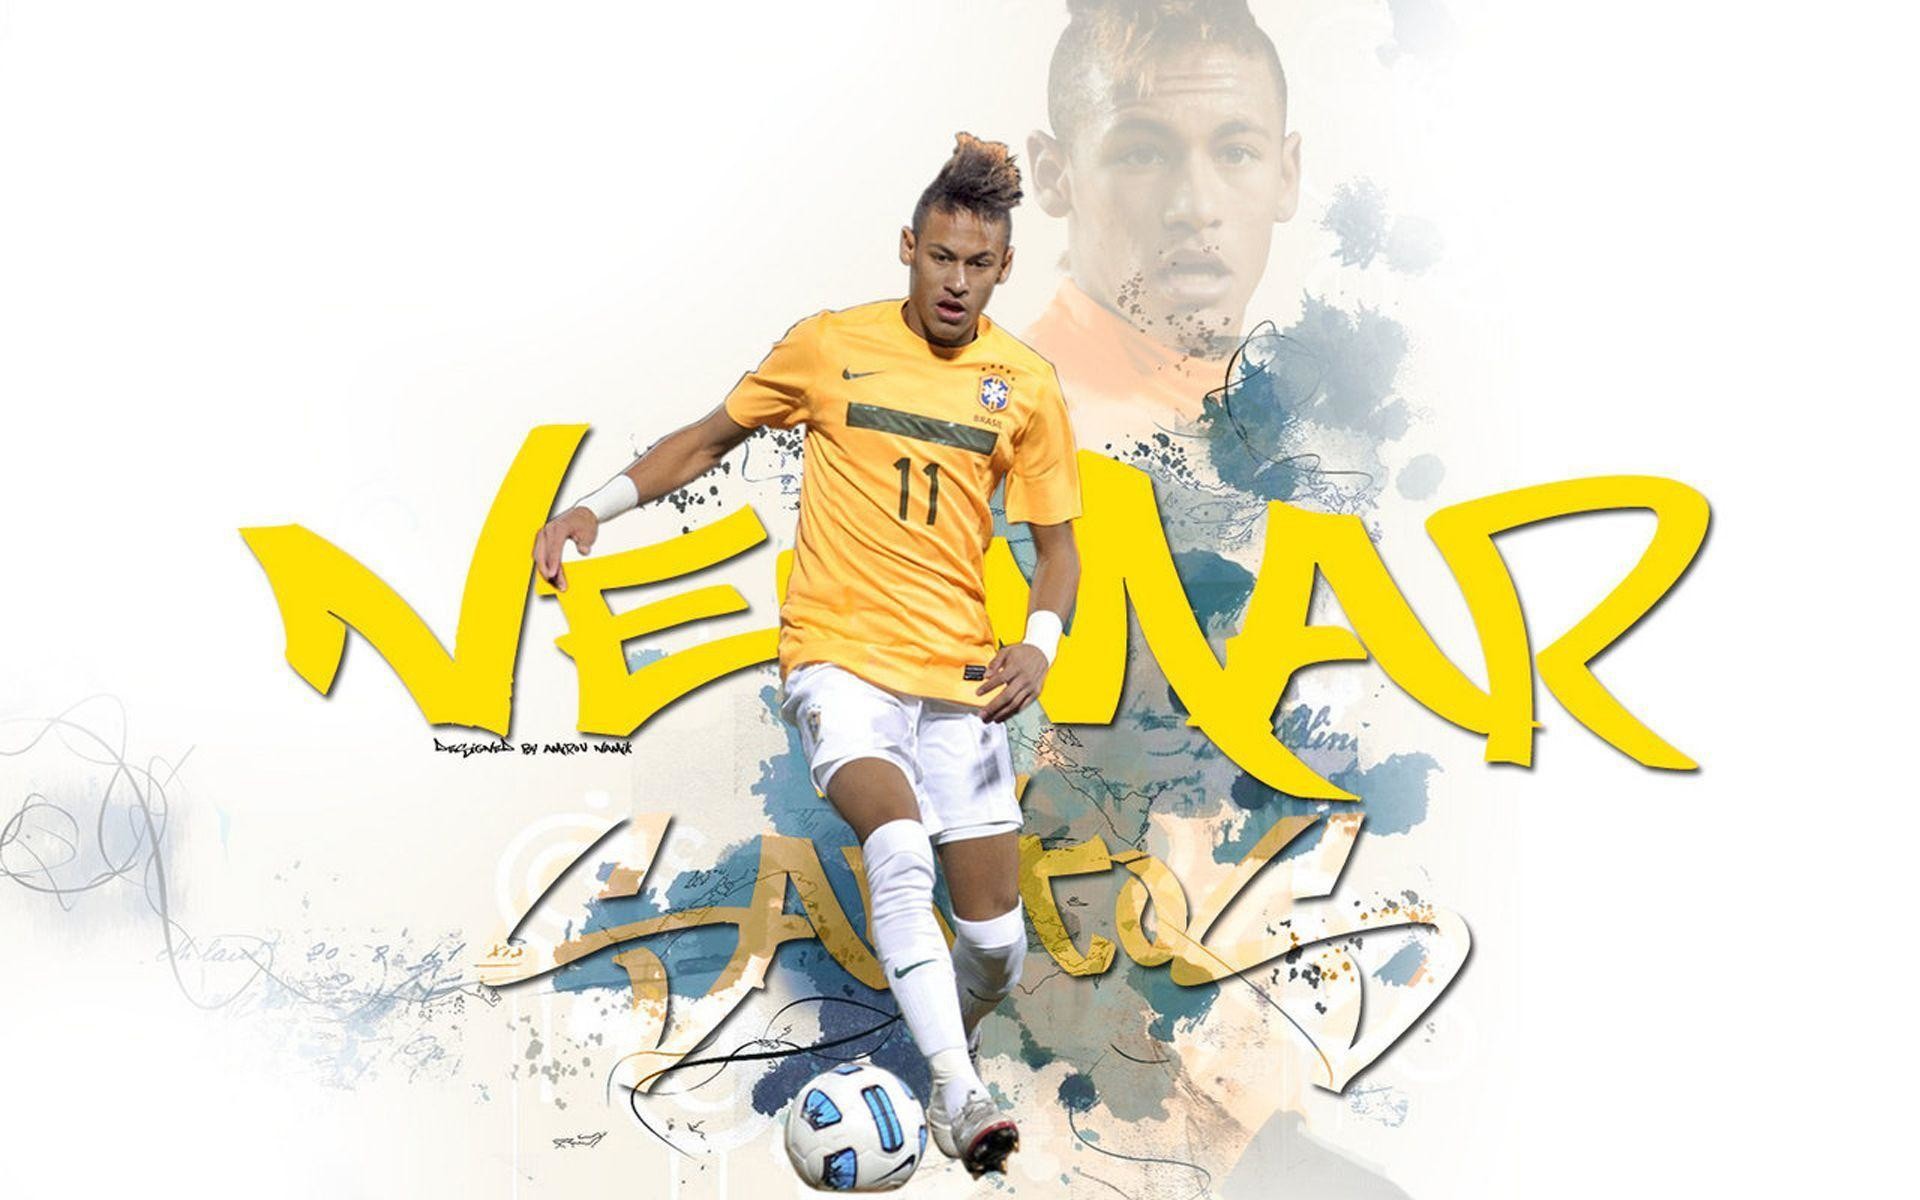 1920x1200 Neymar Grafite 2013 Wallpaper Wide or HD | Male Celebrities Wallpapers